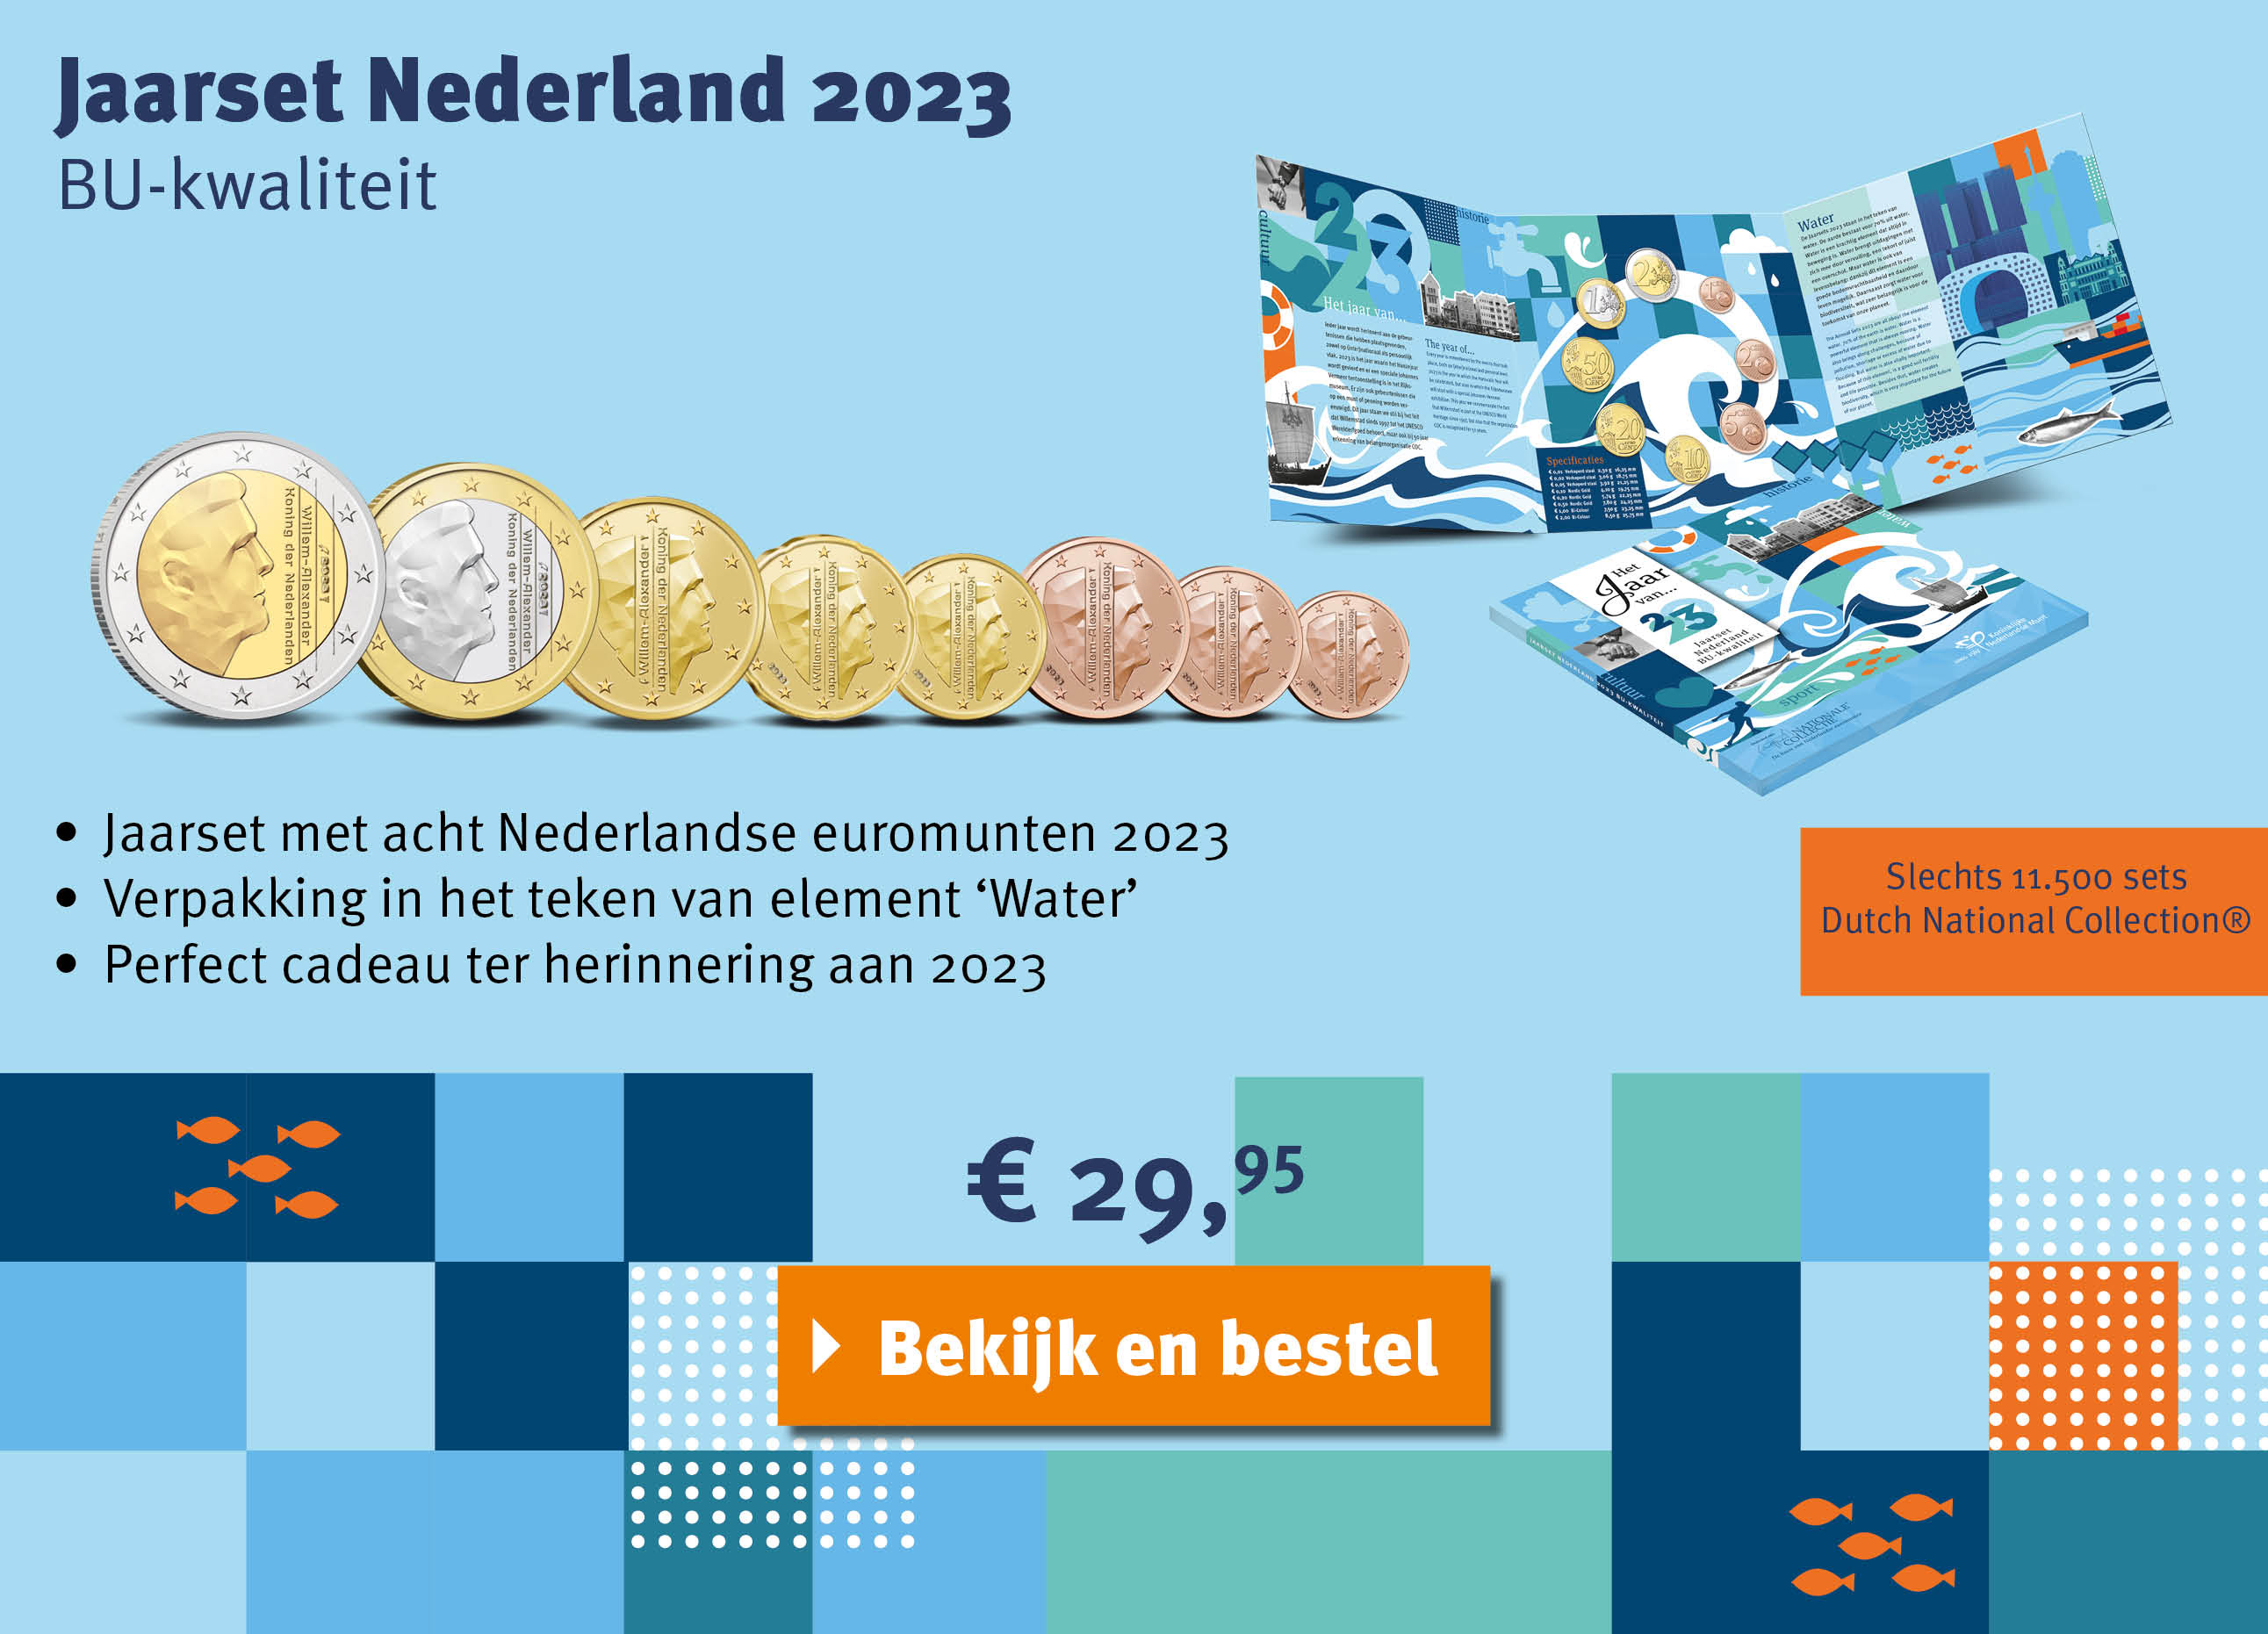 Bekijk en bestel: BU Jaarset Nederlands 2023